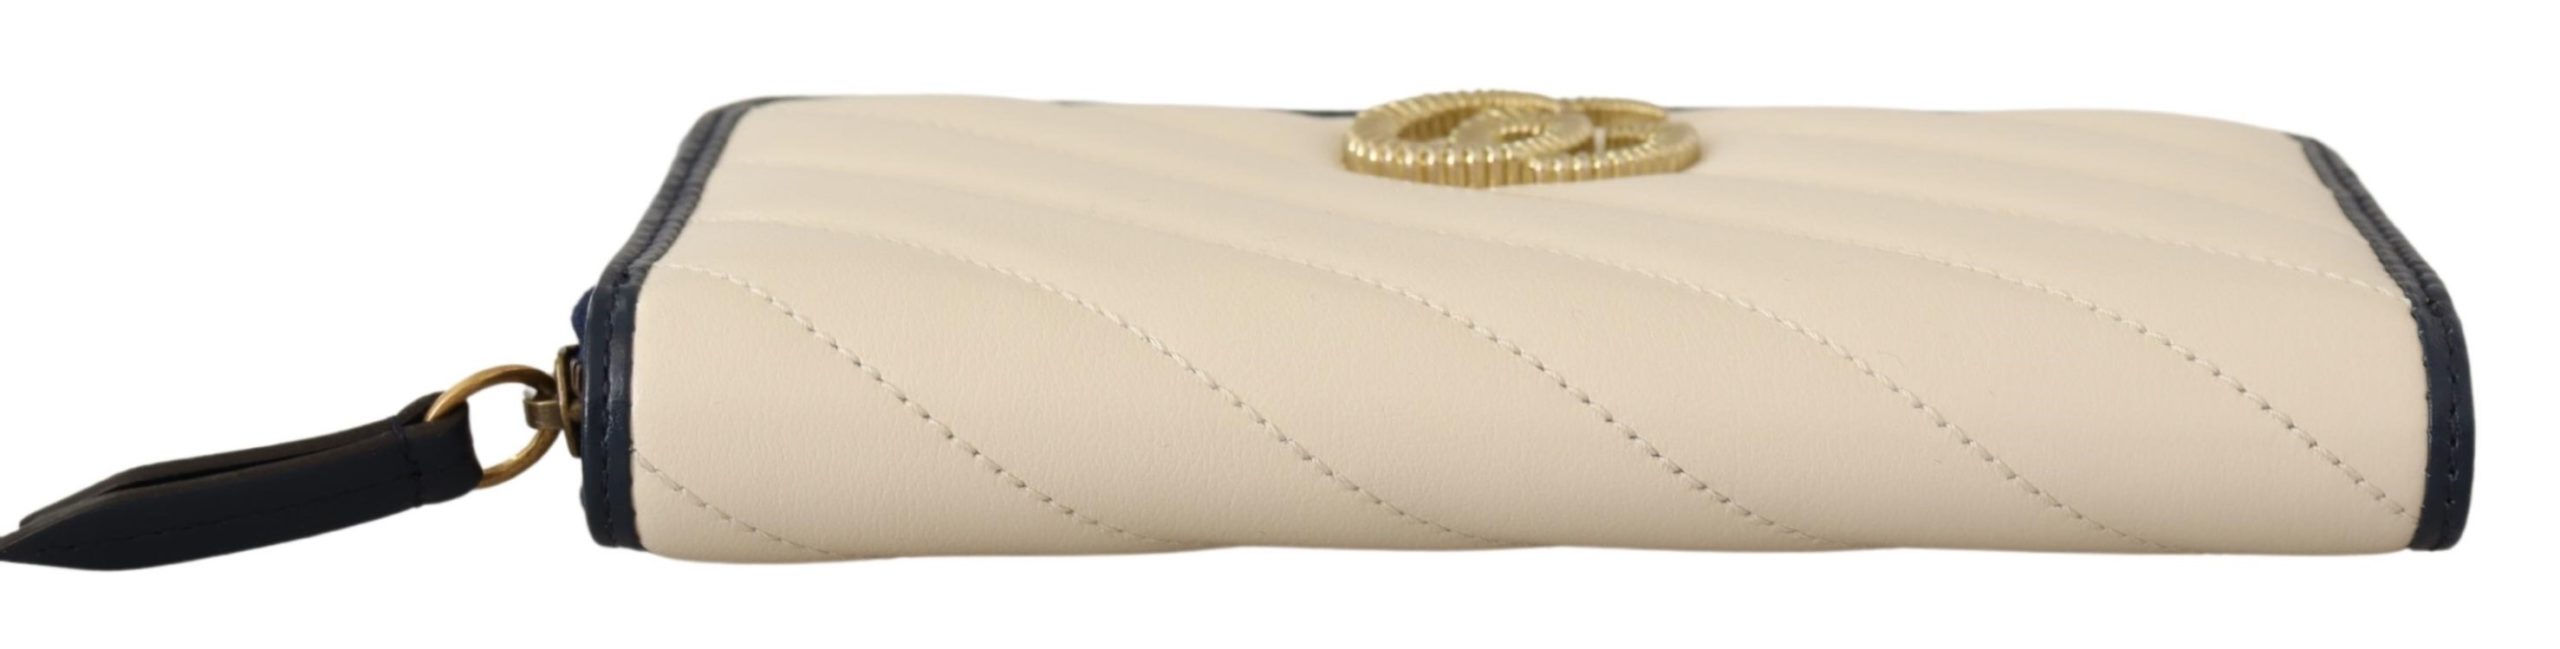 White & Blue Leather Marmont GG Torchon Zip Around Wallet